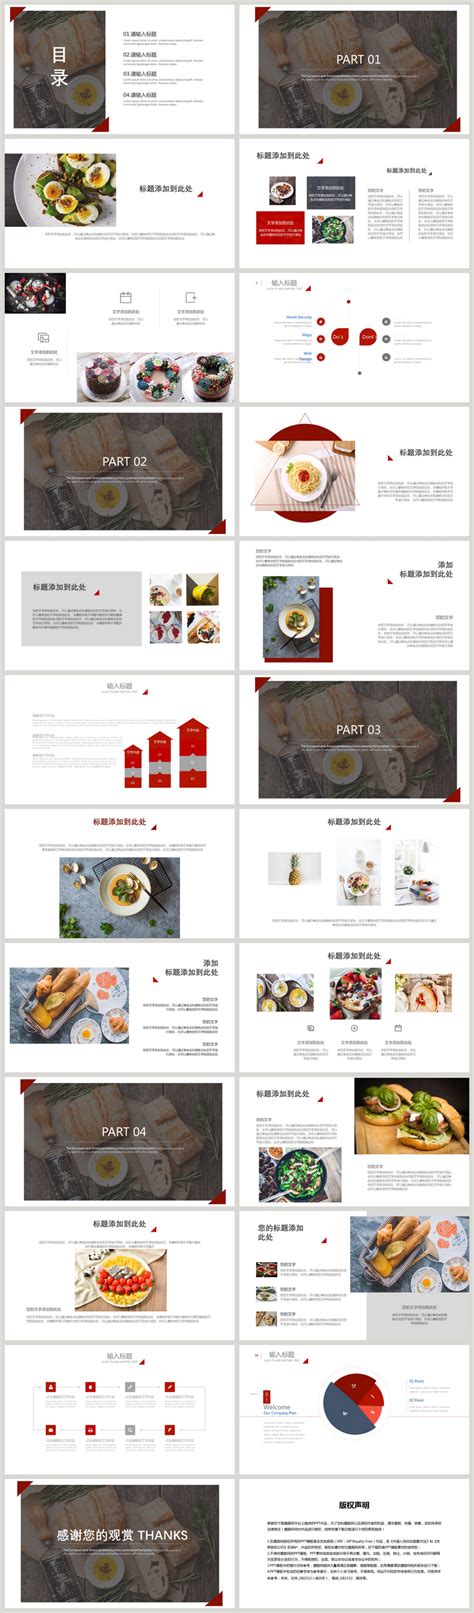 美食餐厅促销活动主题推广方案营销策略PPT模板 - 彩虹办公